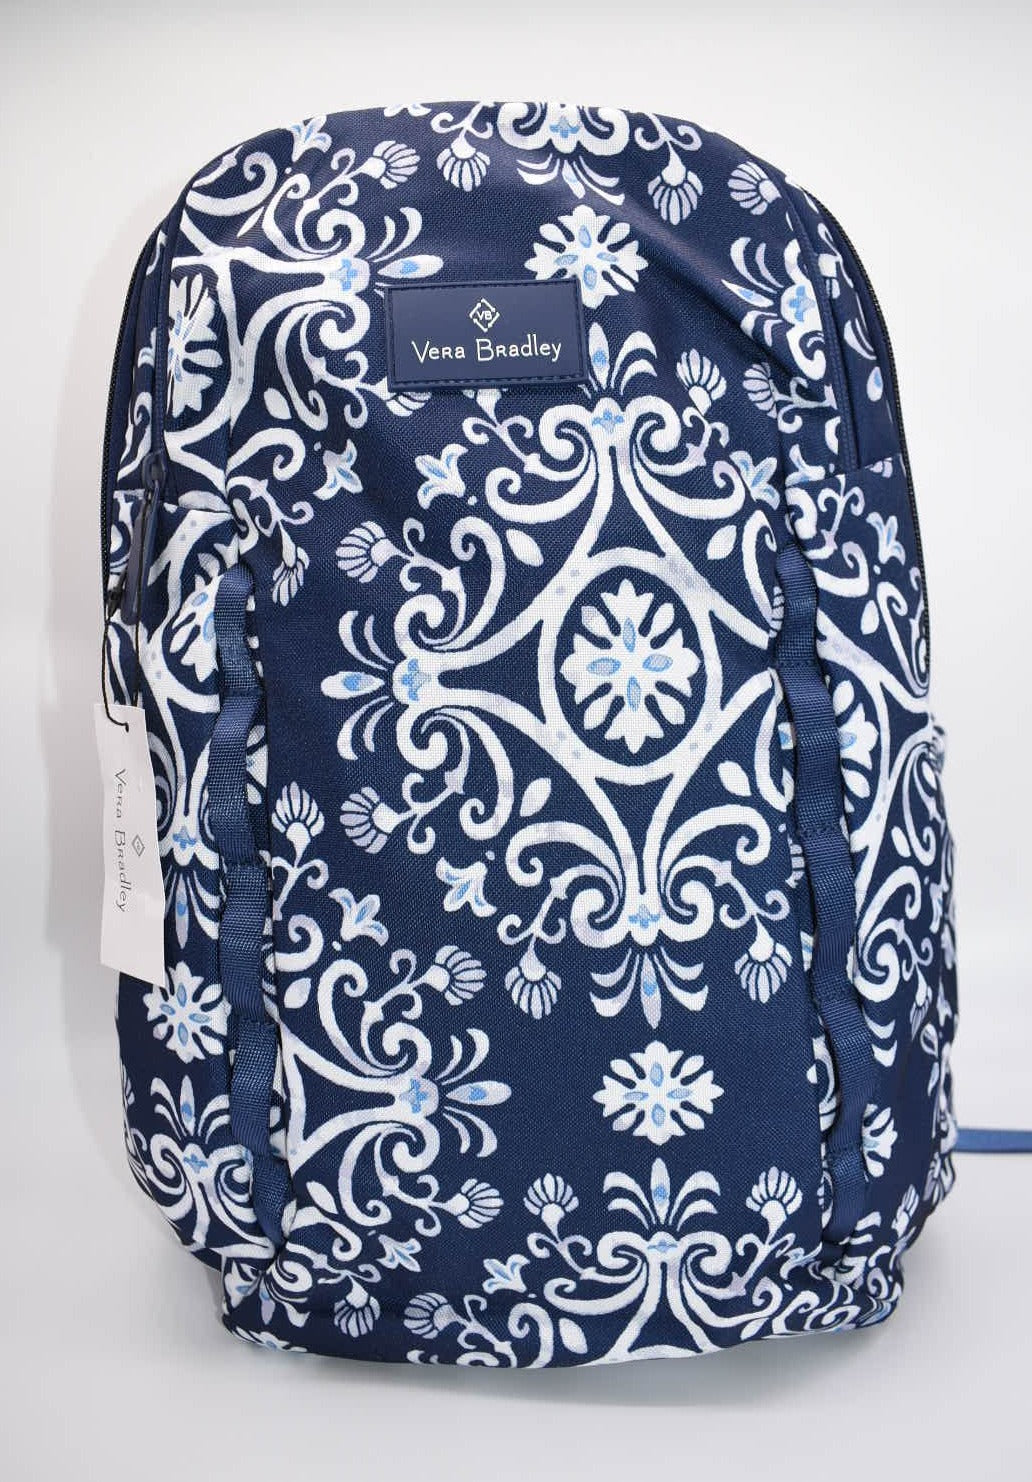 Vera Bradley Lighten Up Sporty Backpack in "Steel Blue Medallion" Pattern